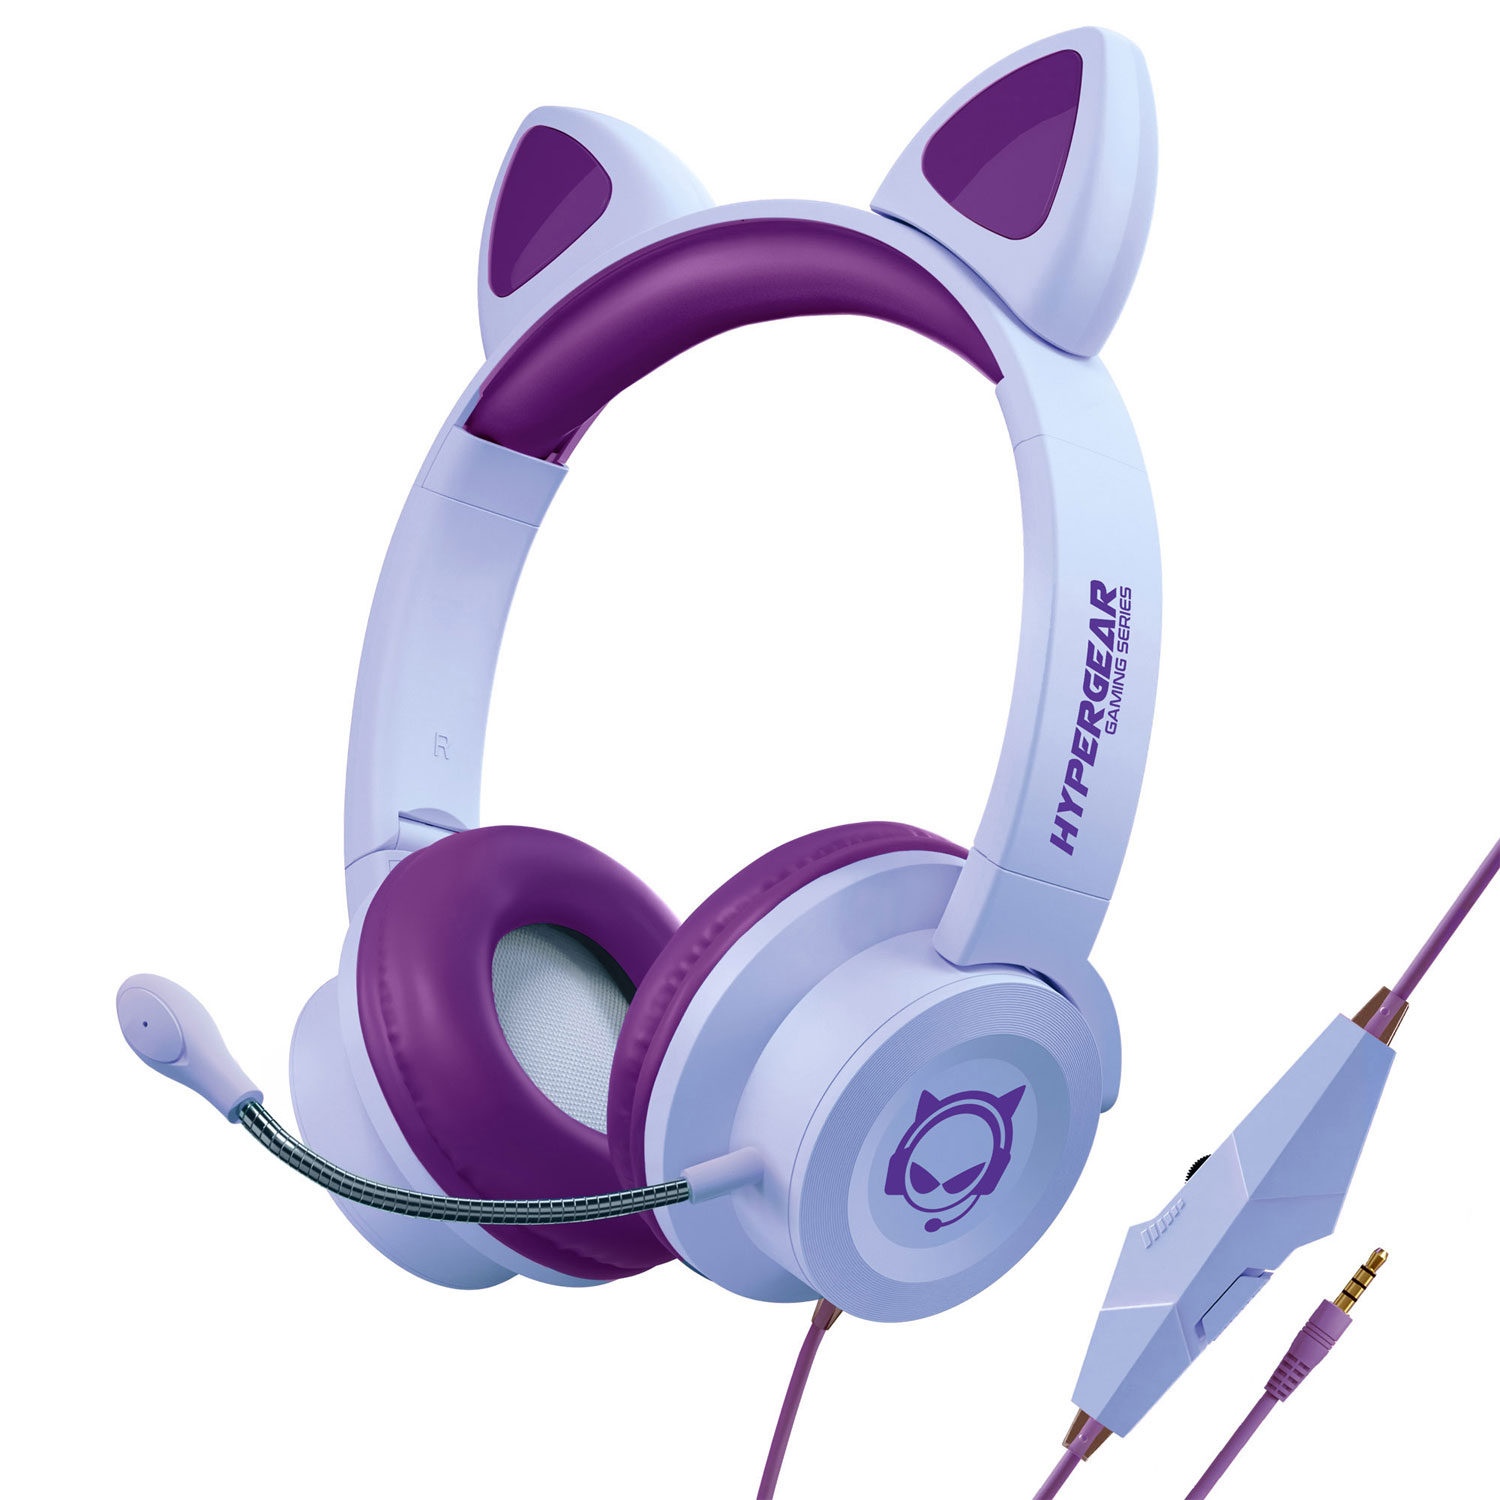 HyperGear Kombat Kitty Gaming Headset Pink